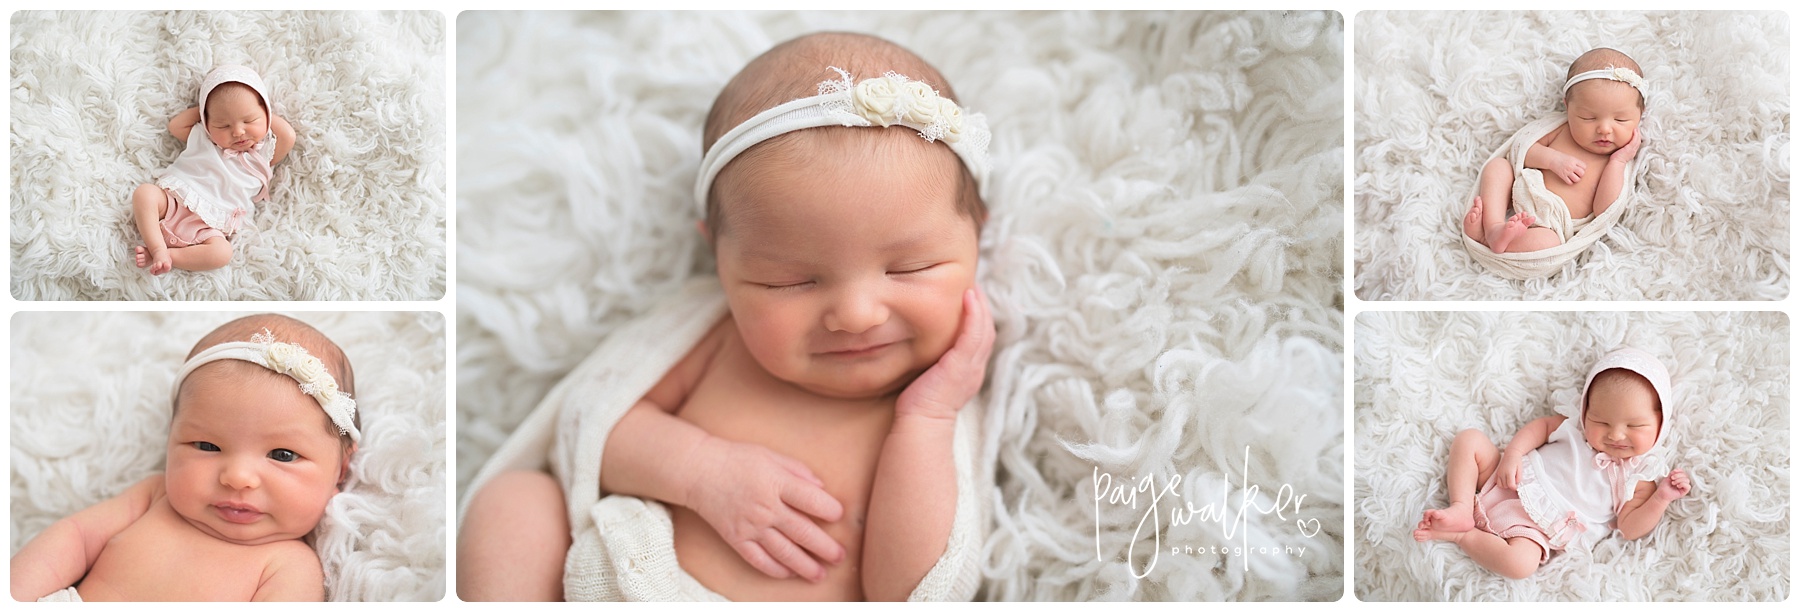 newborn girl smiling